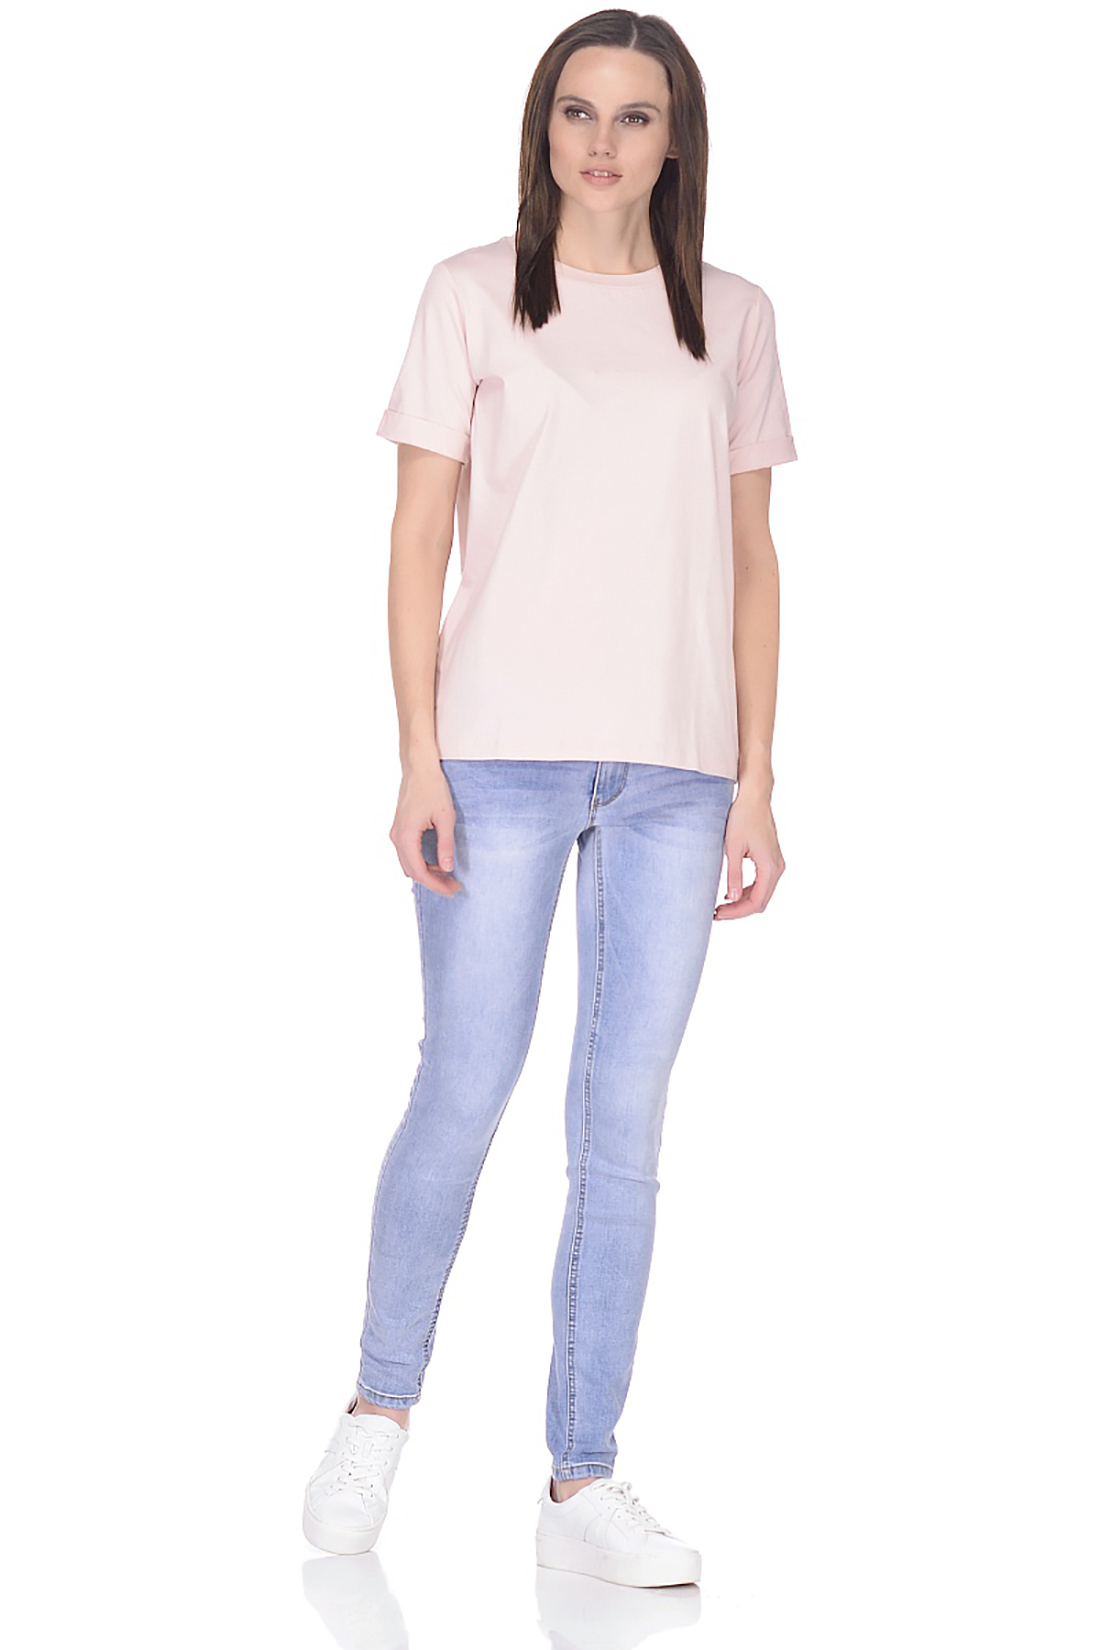 Прямая базовая футболка (арт. baon B238205), размер M, цвет розовый Прямая базовая футболка (арт. baon B238205) - фото 3